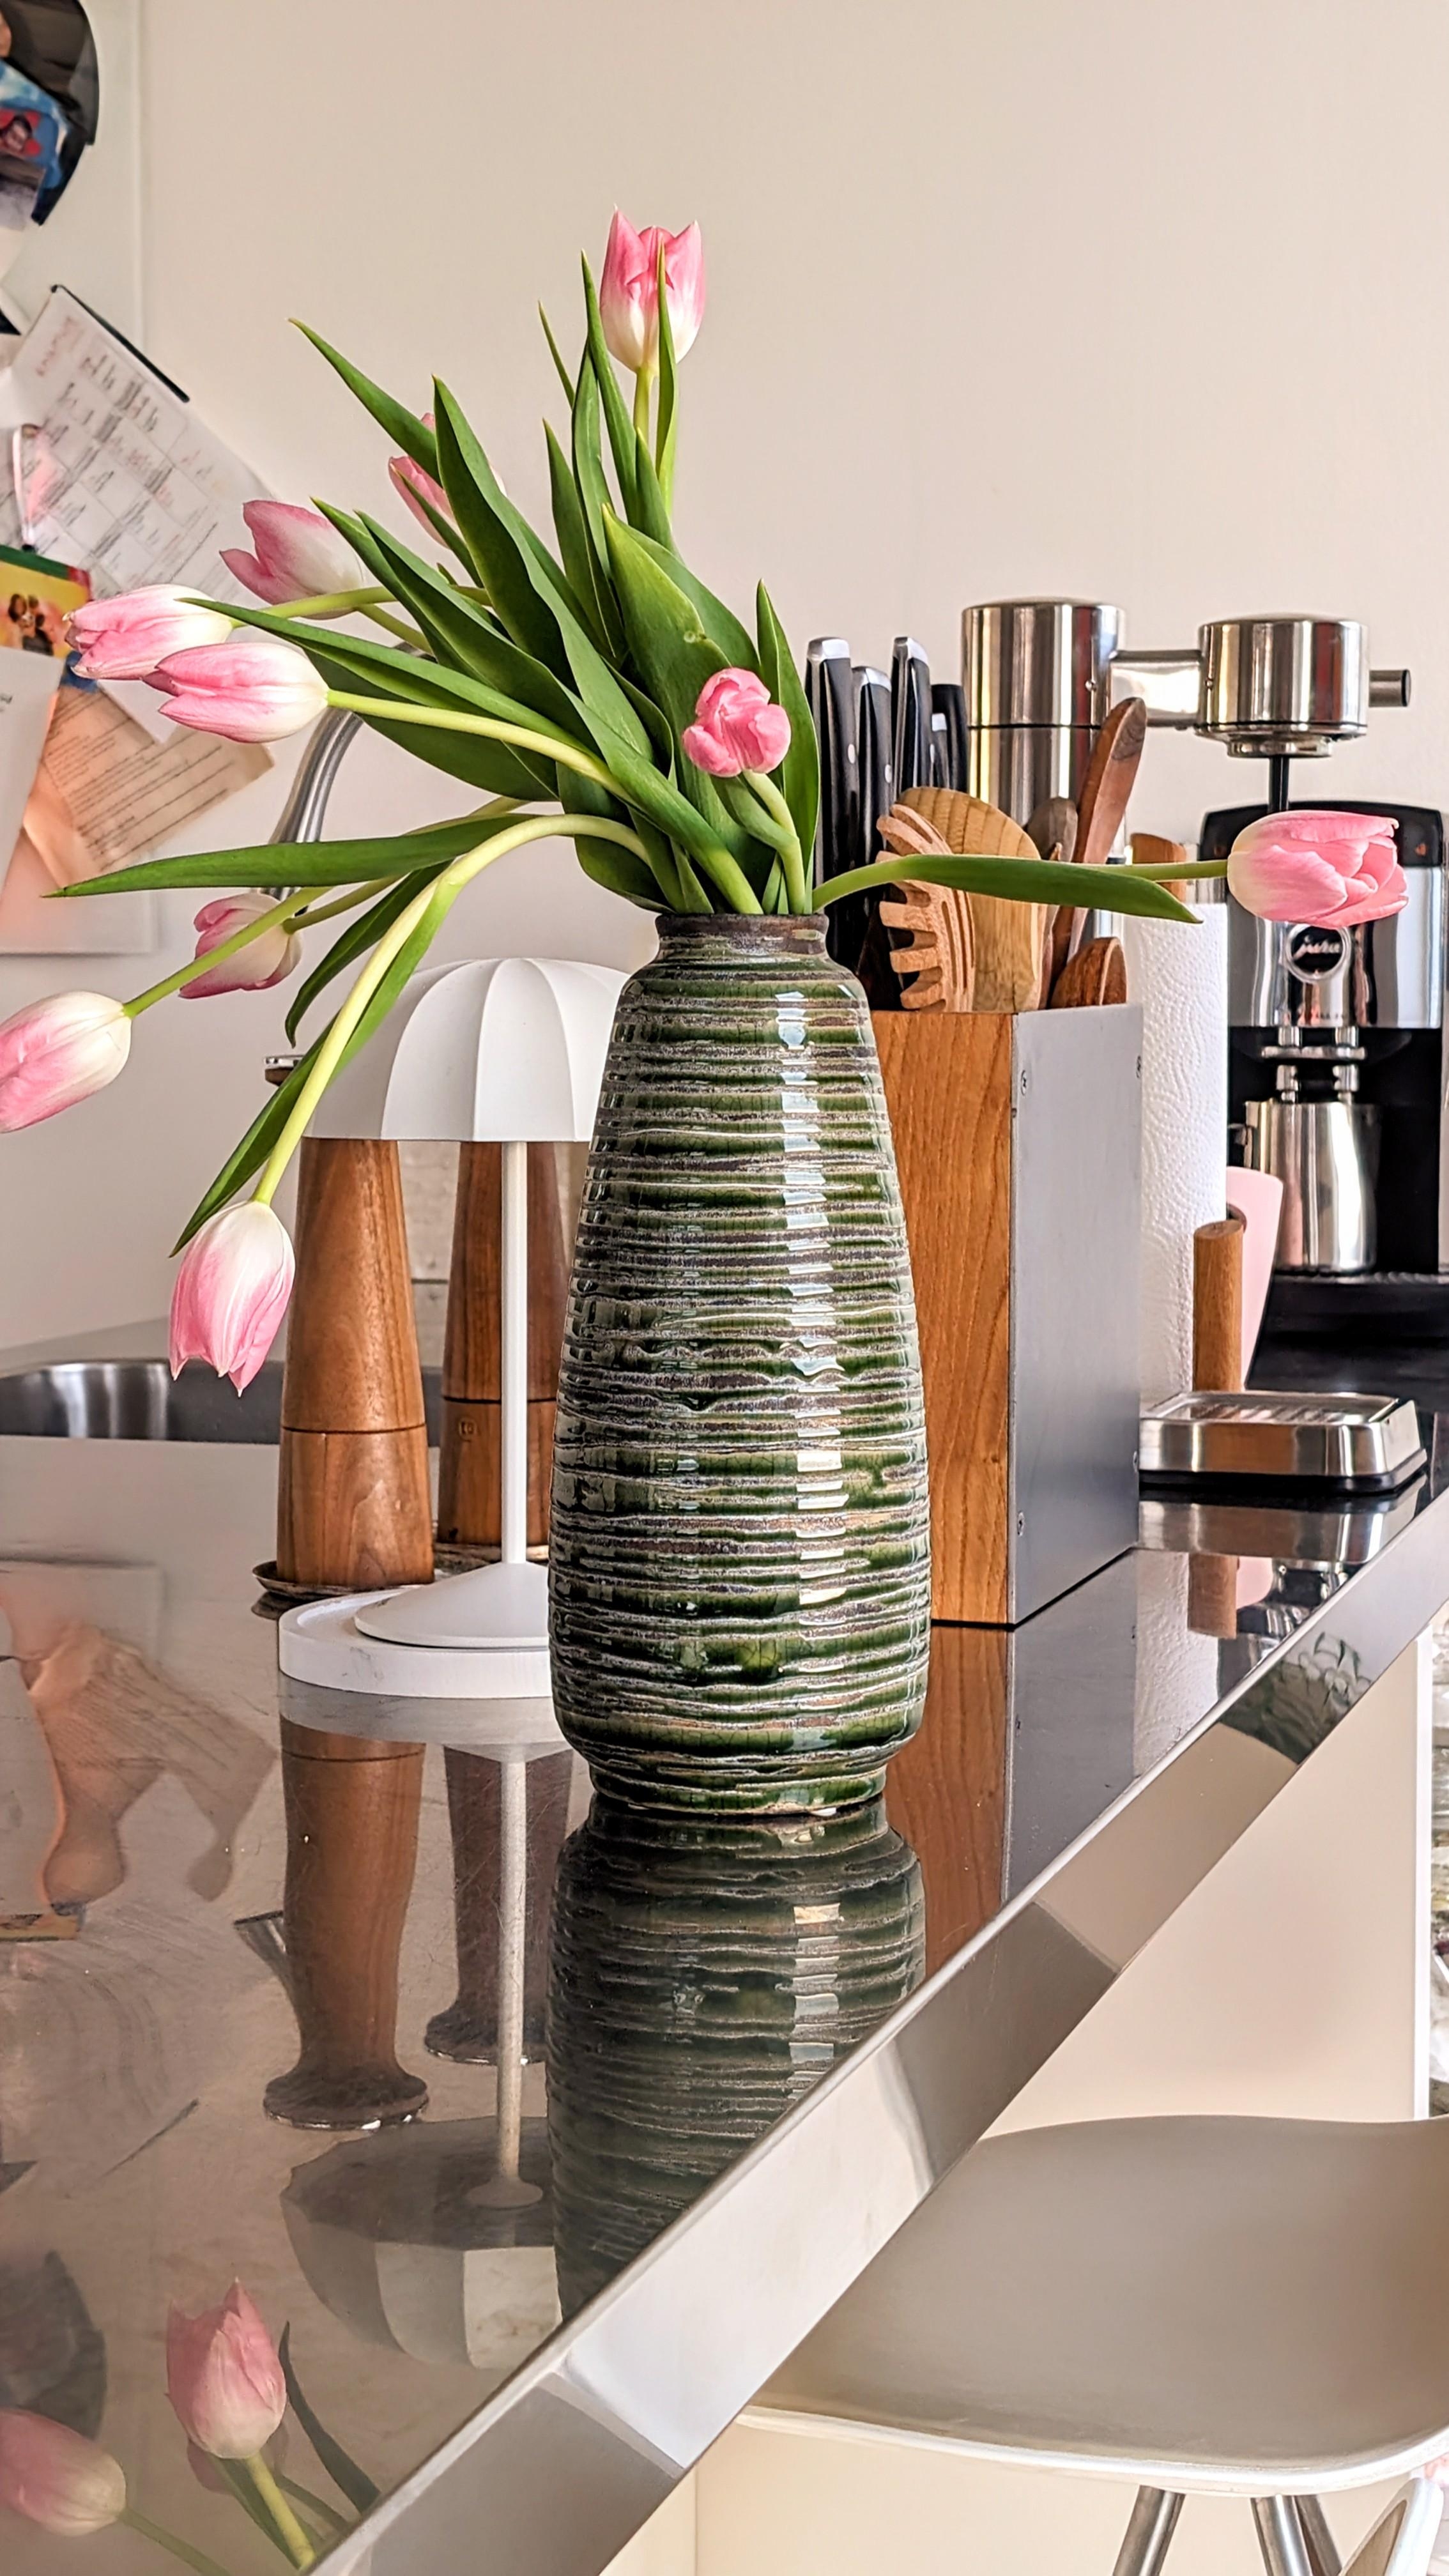 #küche #tulpen #dekoration #interiordesign #interiordesigner